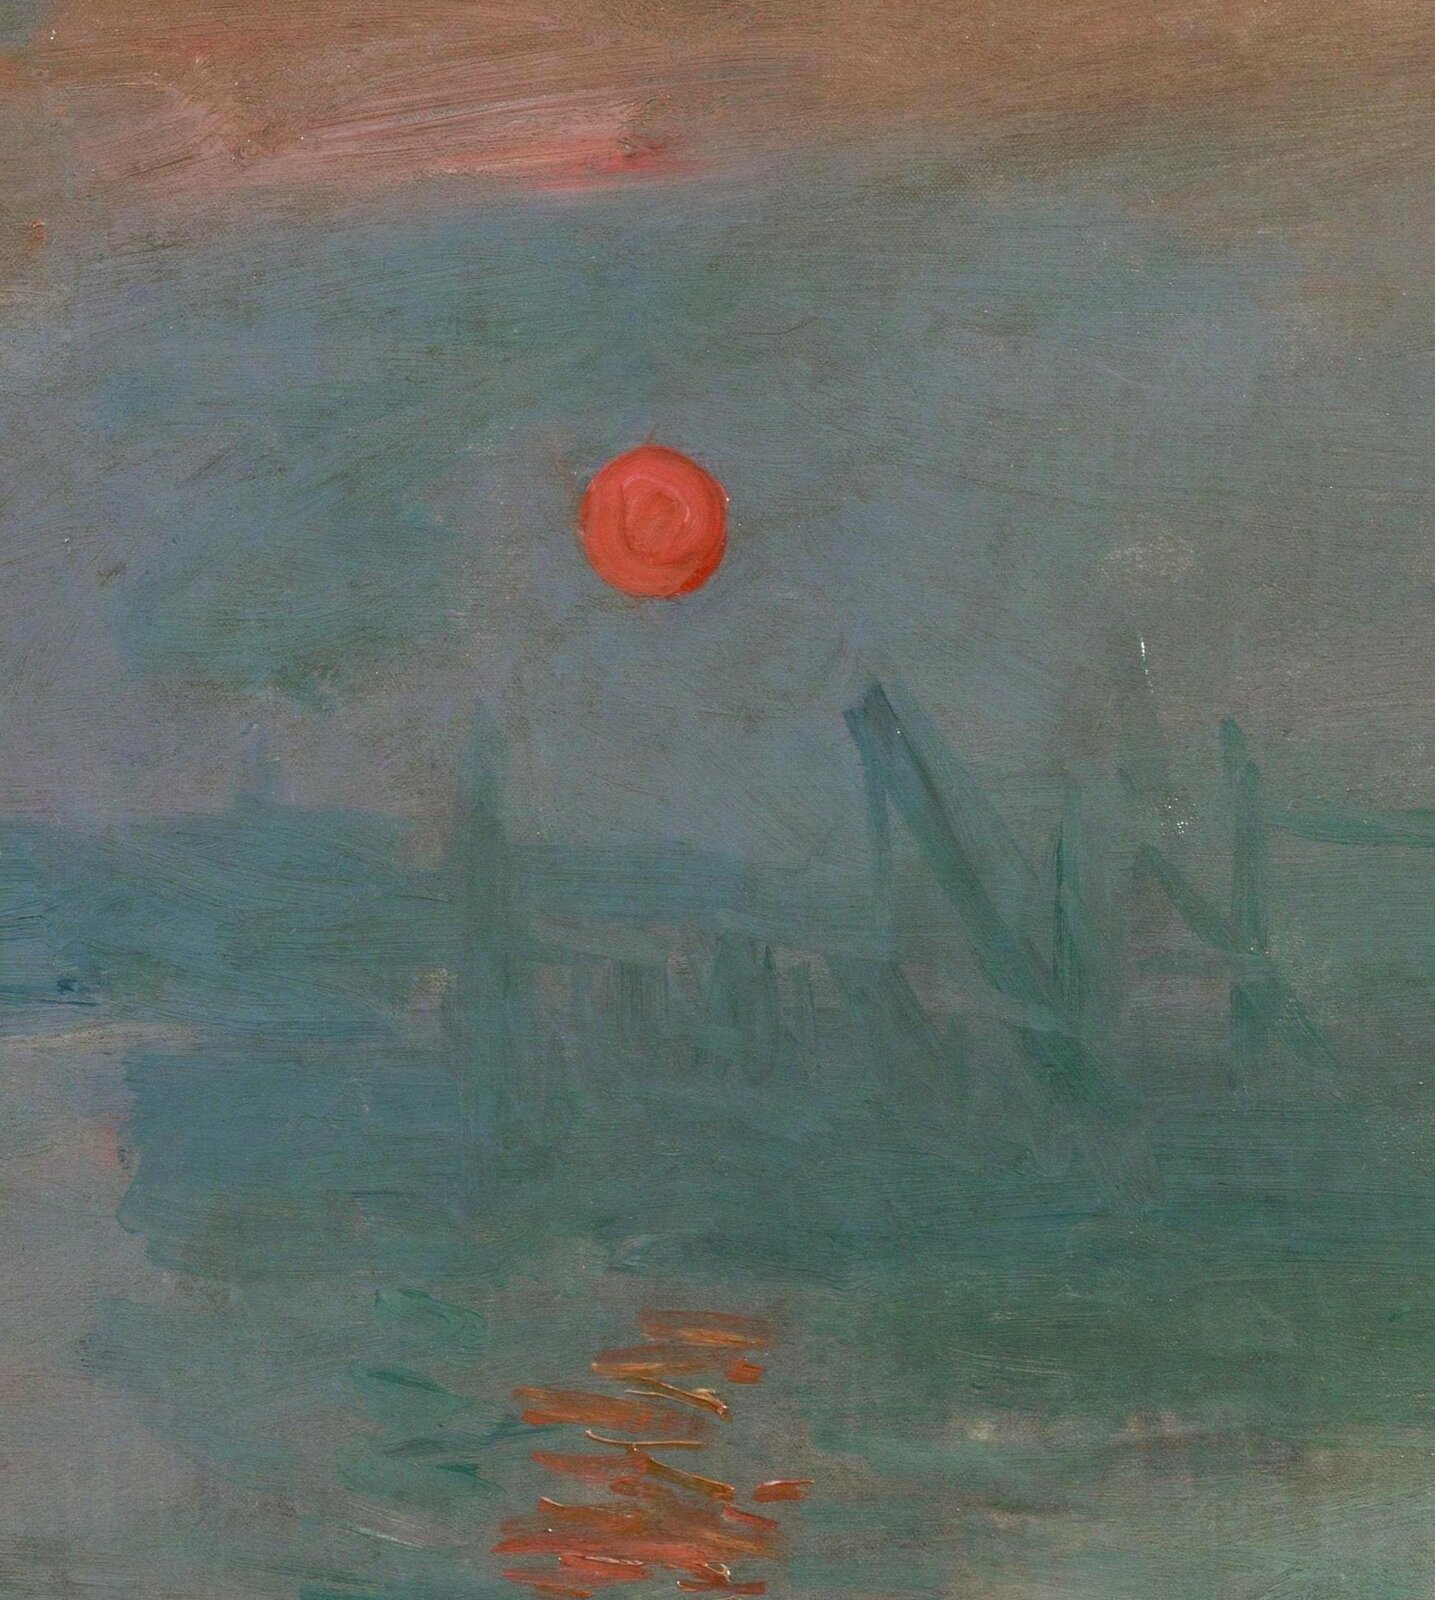 Ilustracja przedstawia fragment obrazu Claude'a Moneta pt. „Impresja, wschód słońca”. Na poniższym fragmencie widoczne jest pomarańczowe słońce, które wyłania się zza horyzontu. W wodzie widoczne jest odbicie słoneczne.